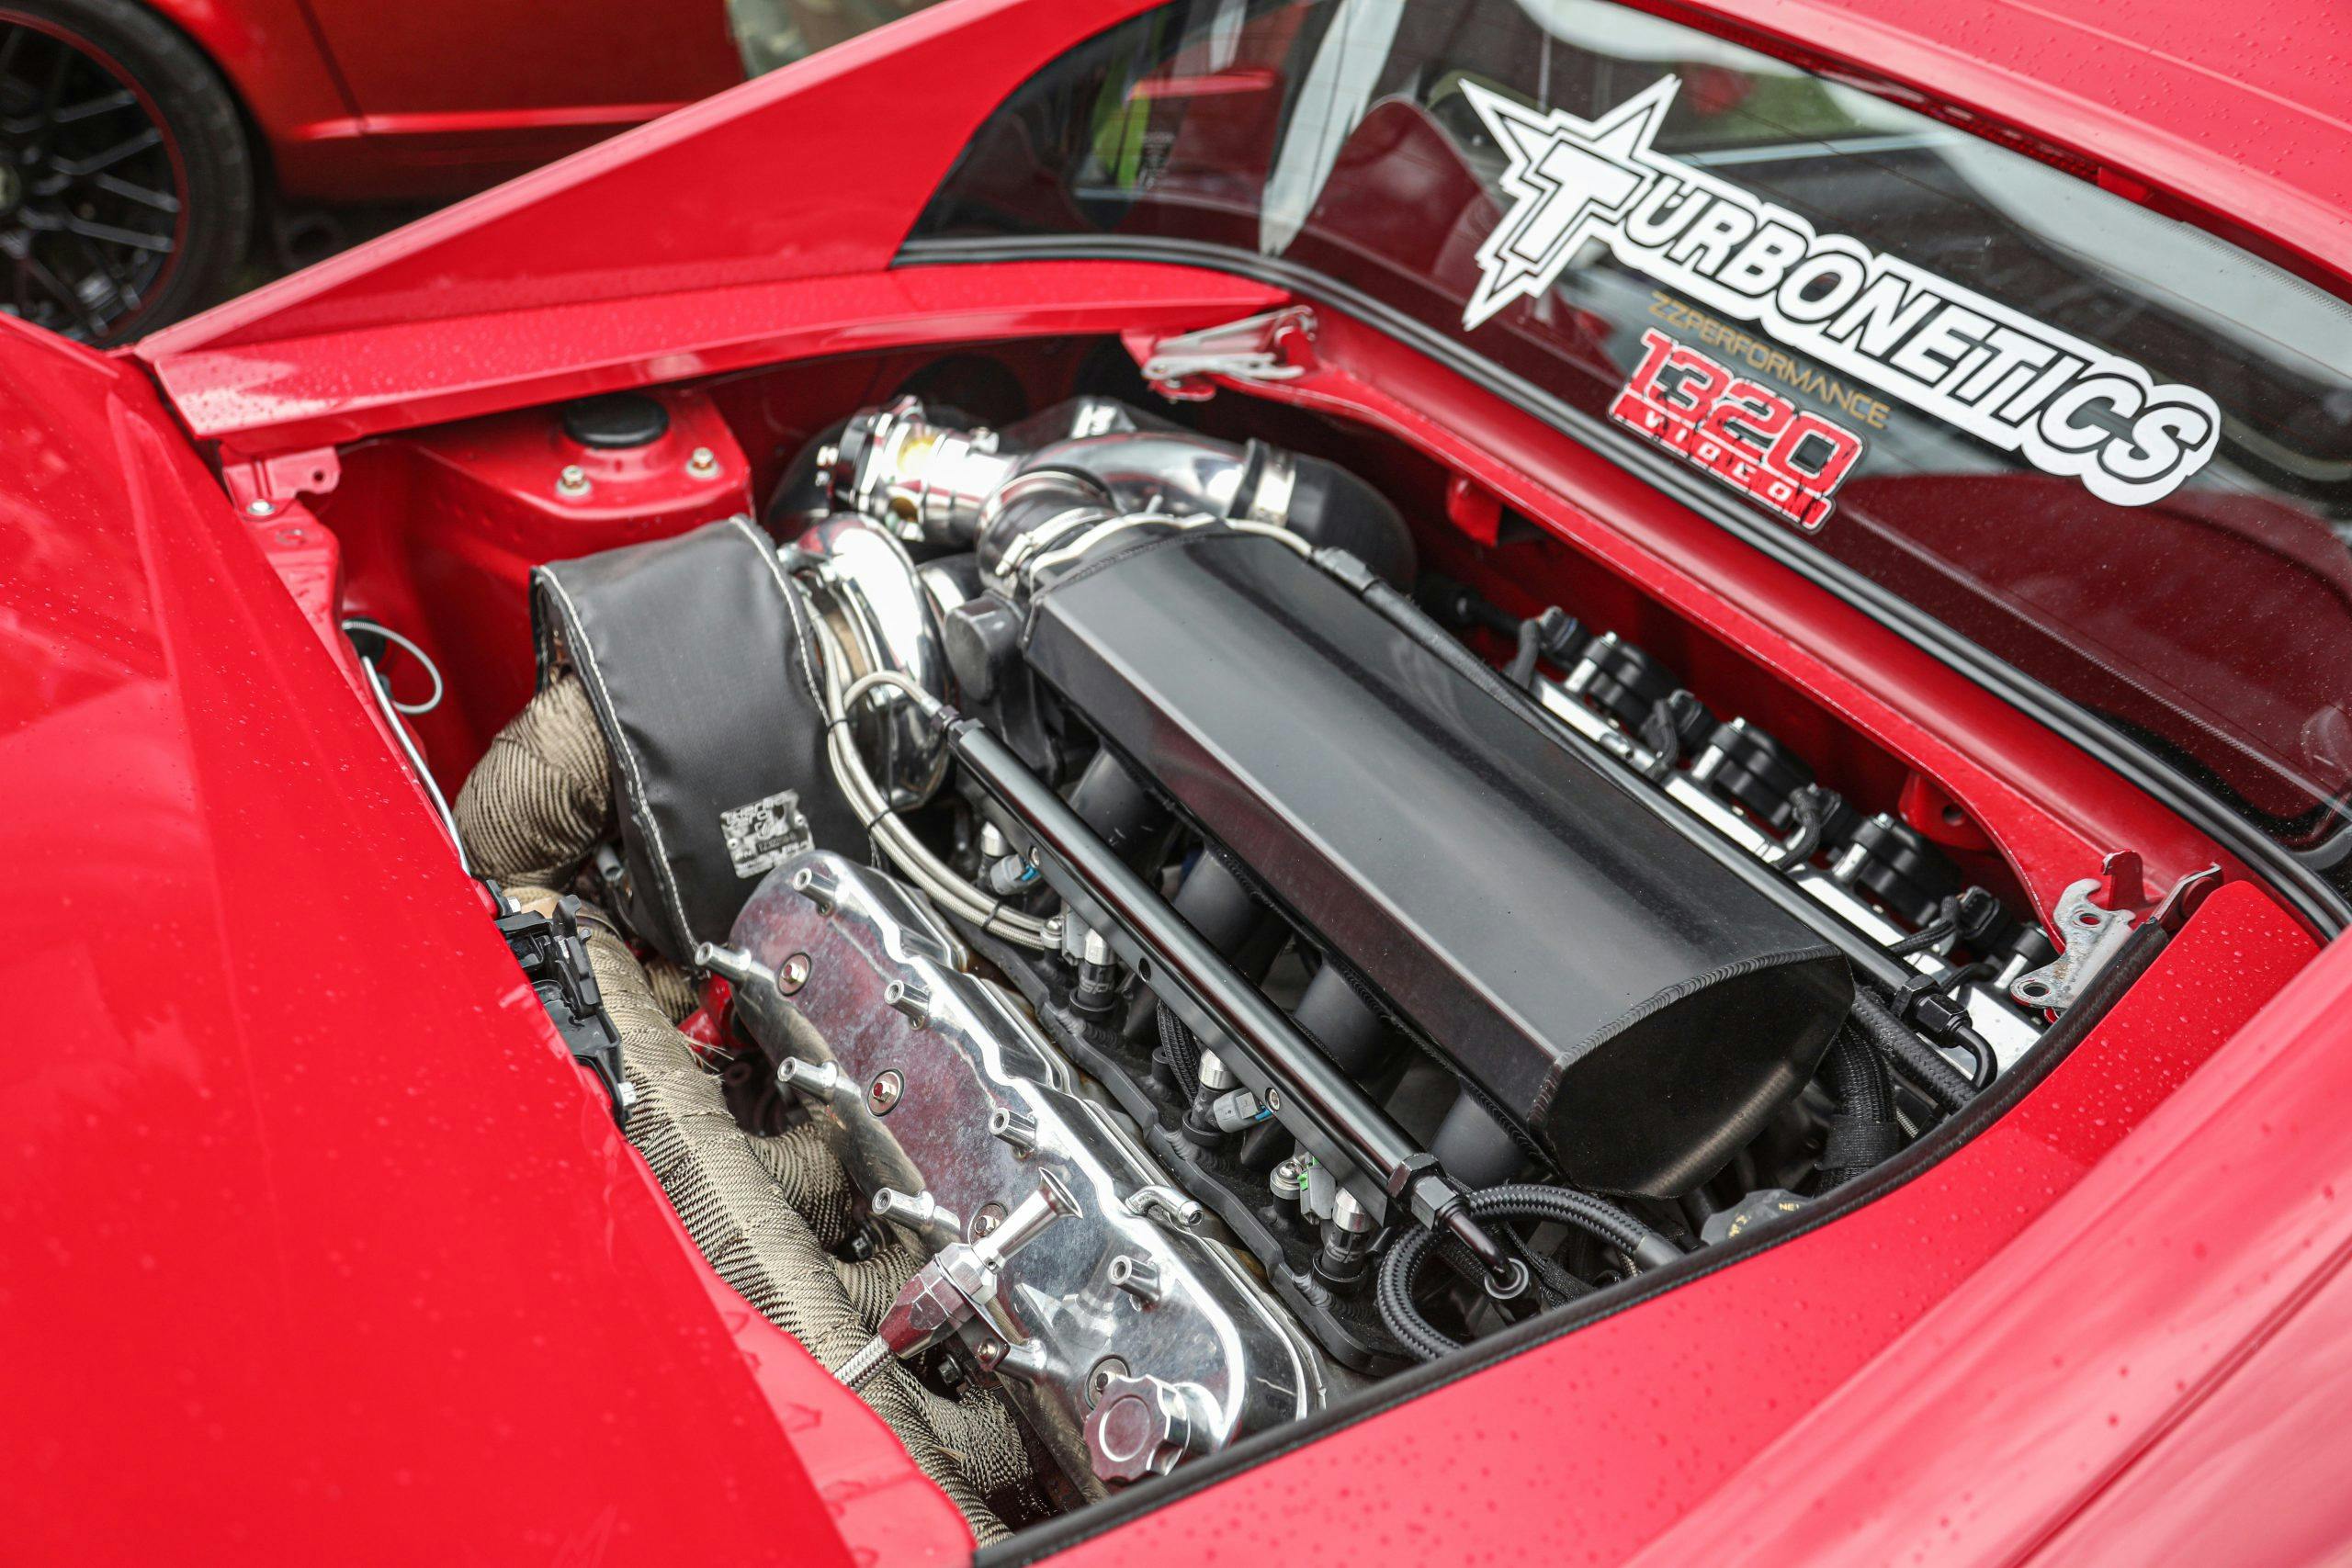 1991 Toyota MR2 engine